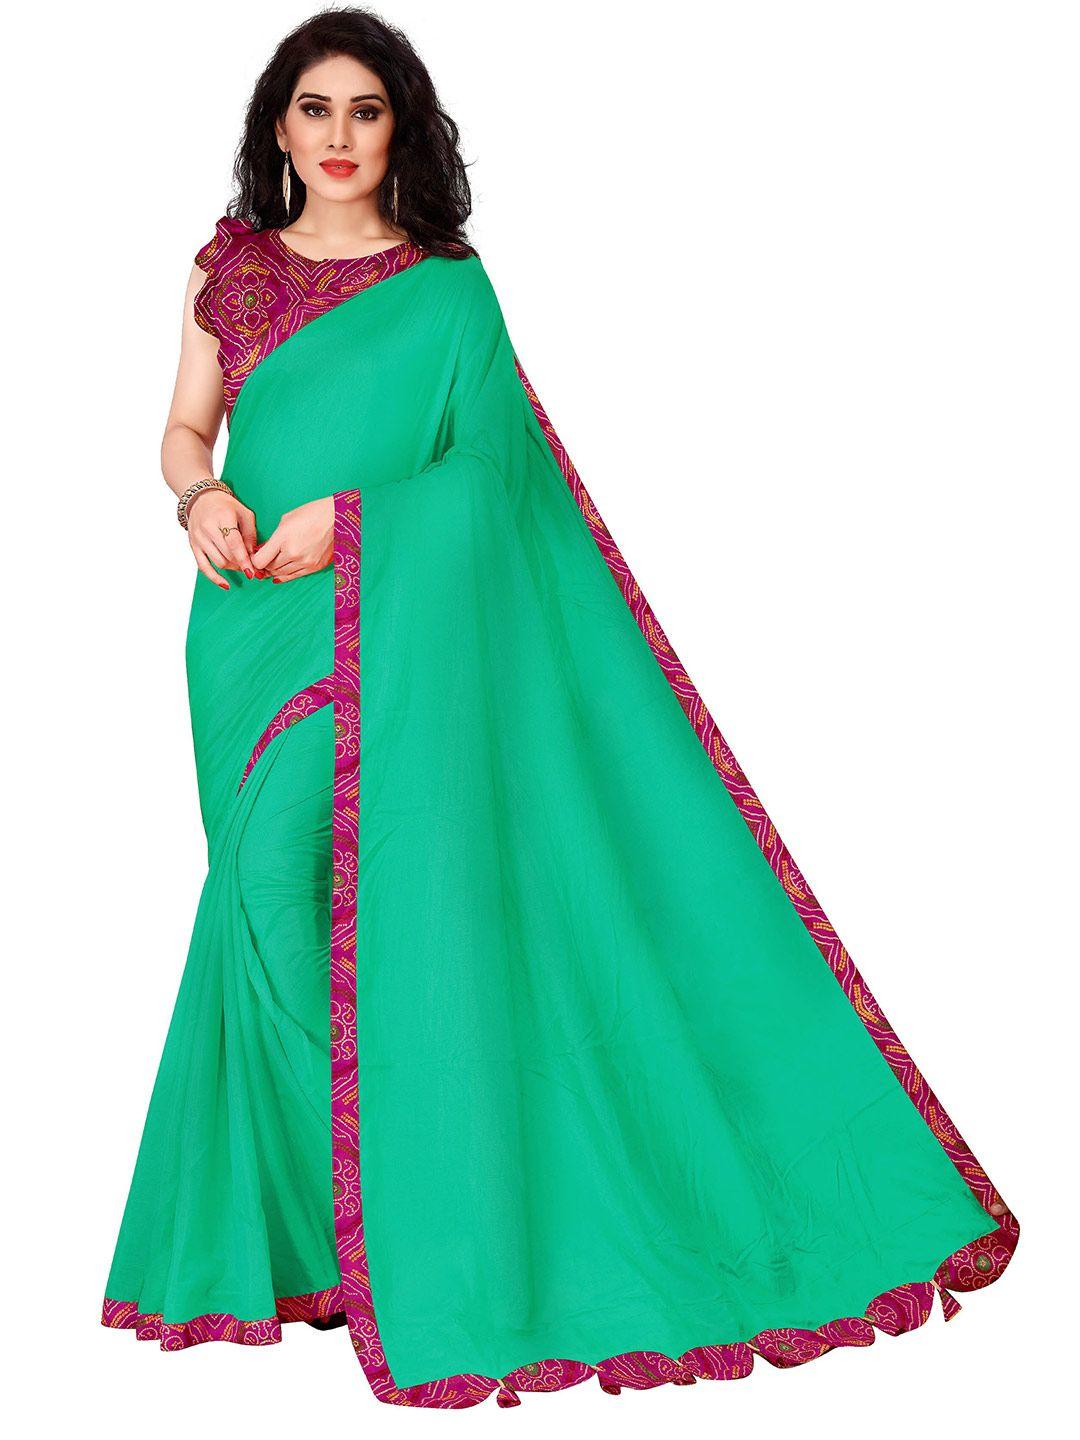 kalini teal & pink printed border sana silk blend saree